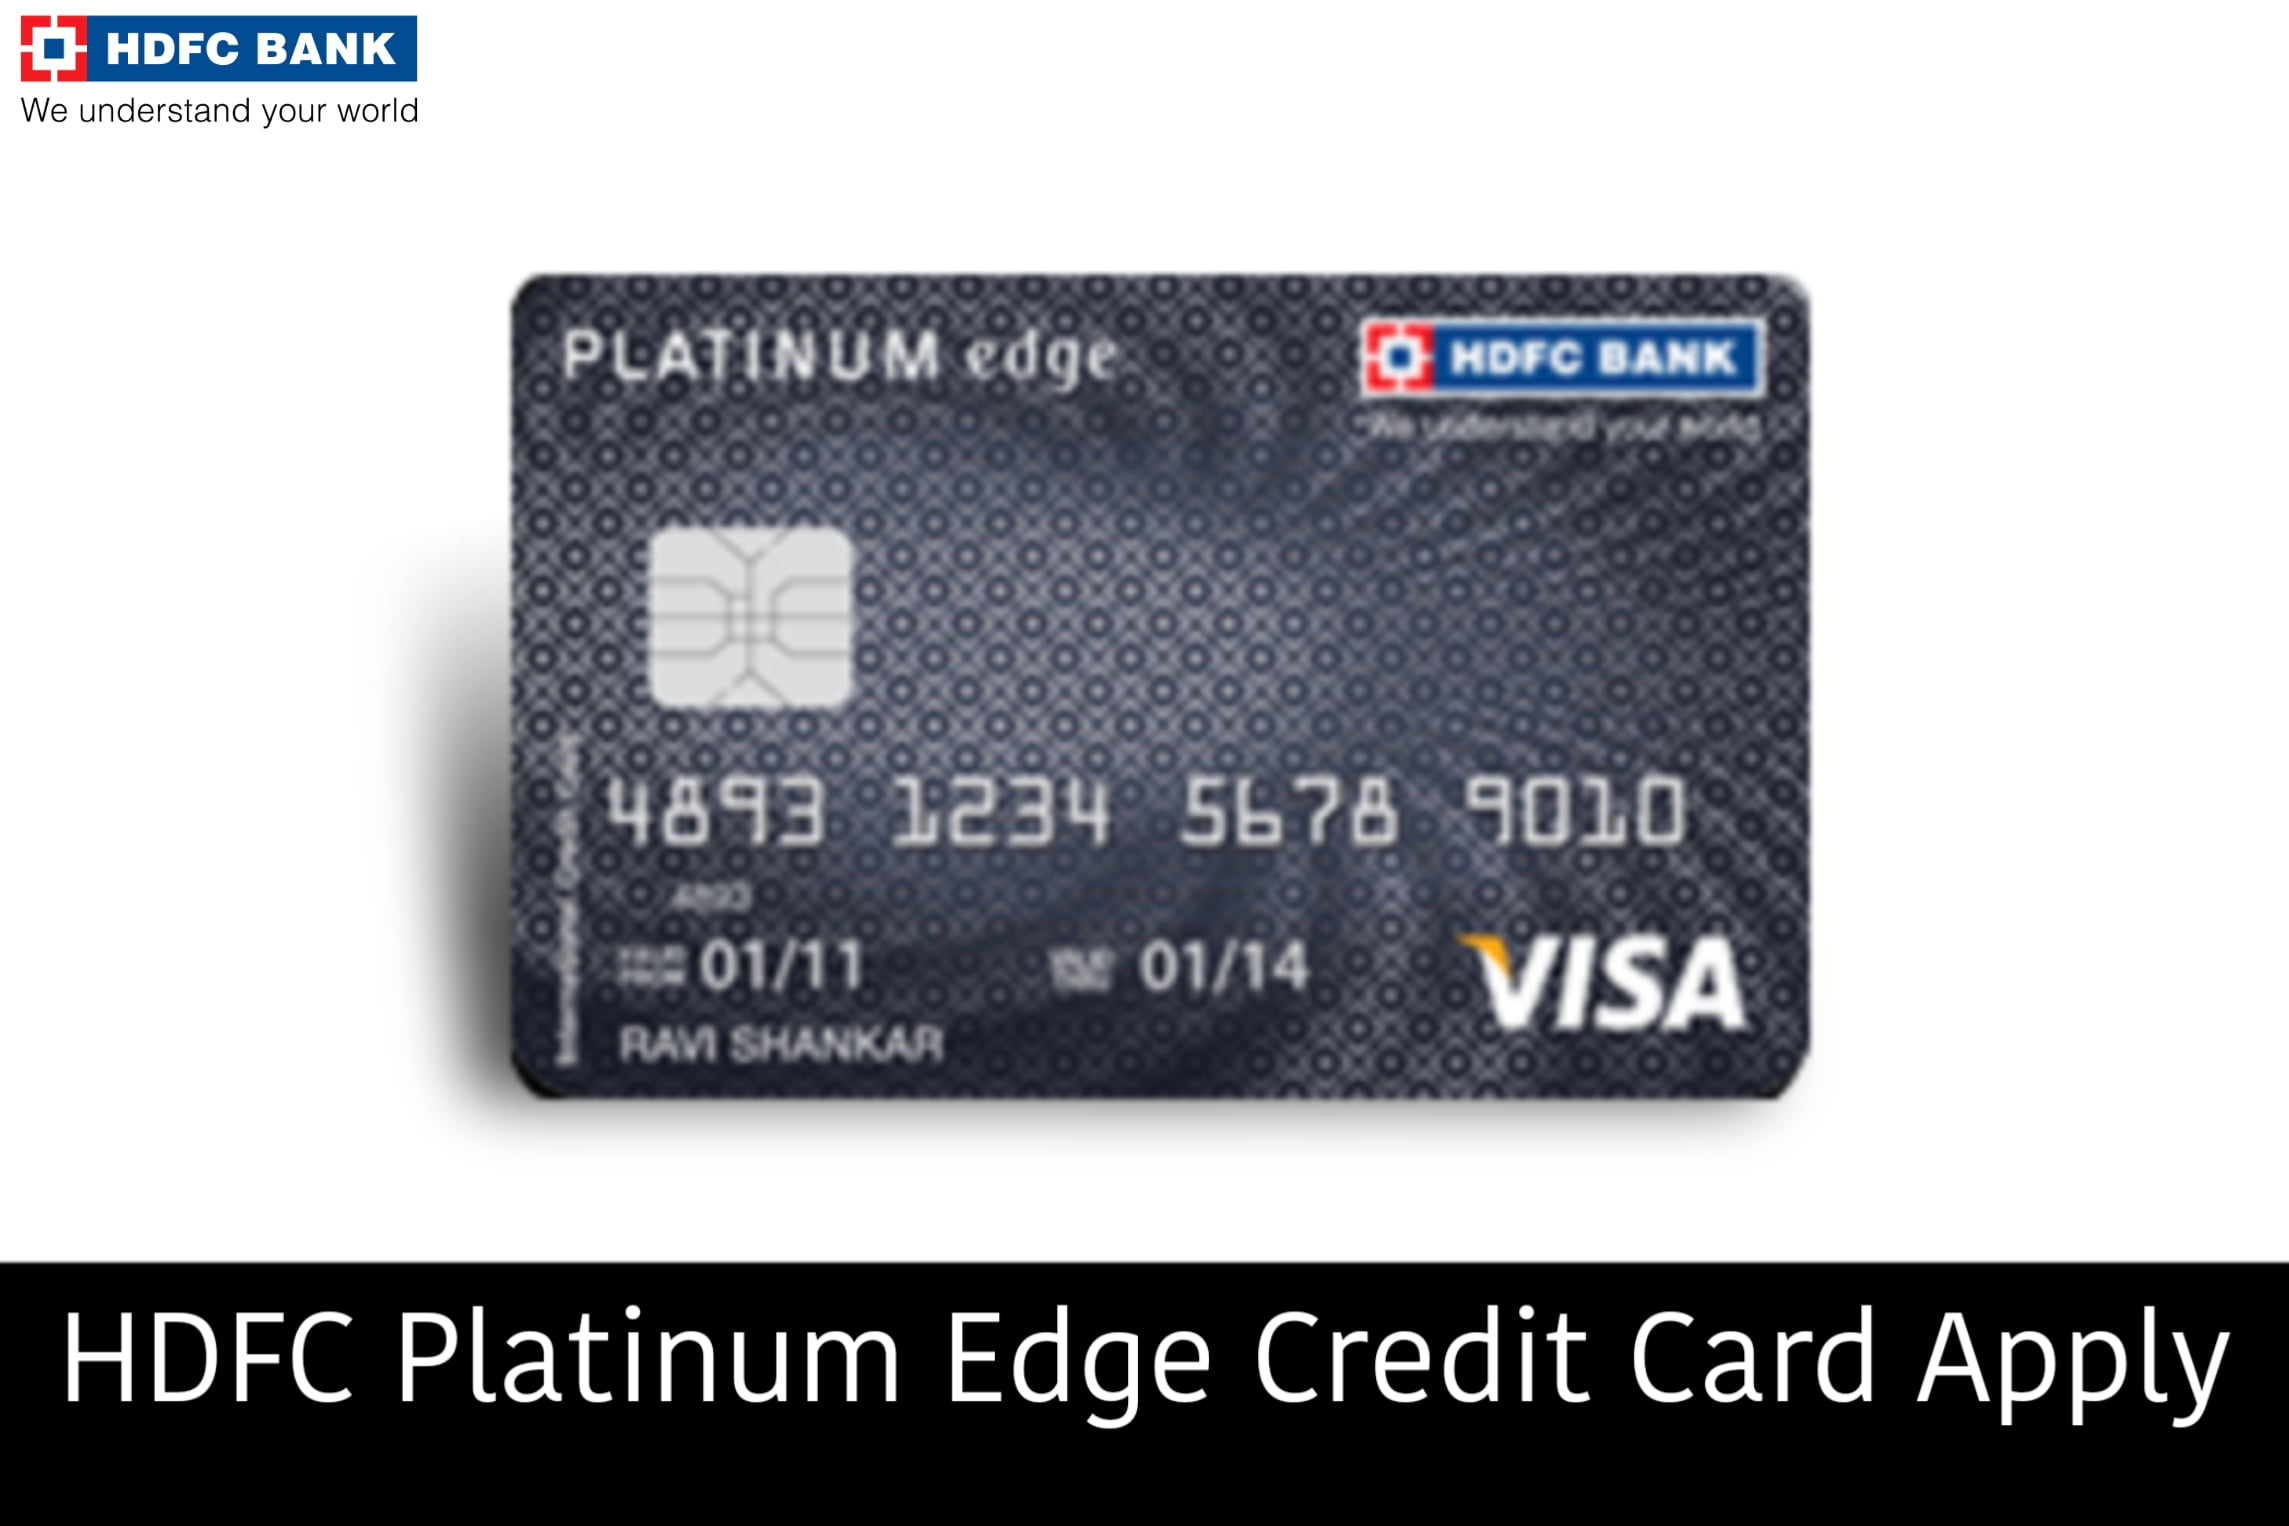 HDFC Platinum Edge Credit Card